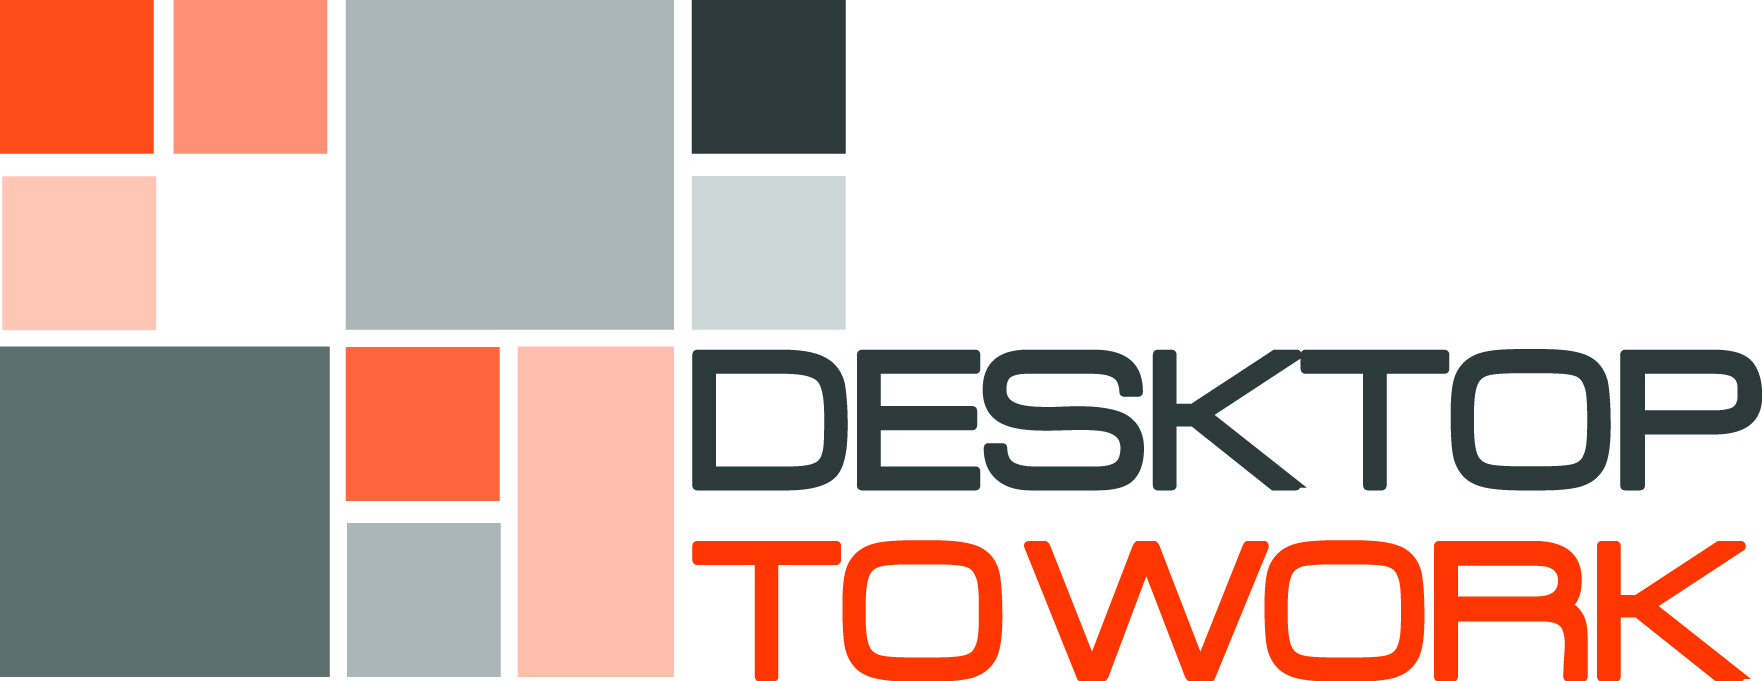 DesktopToWork logo